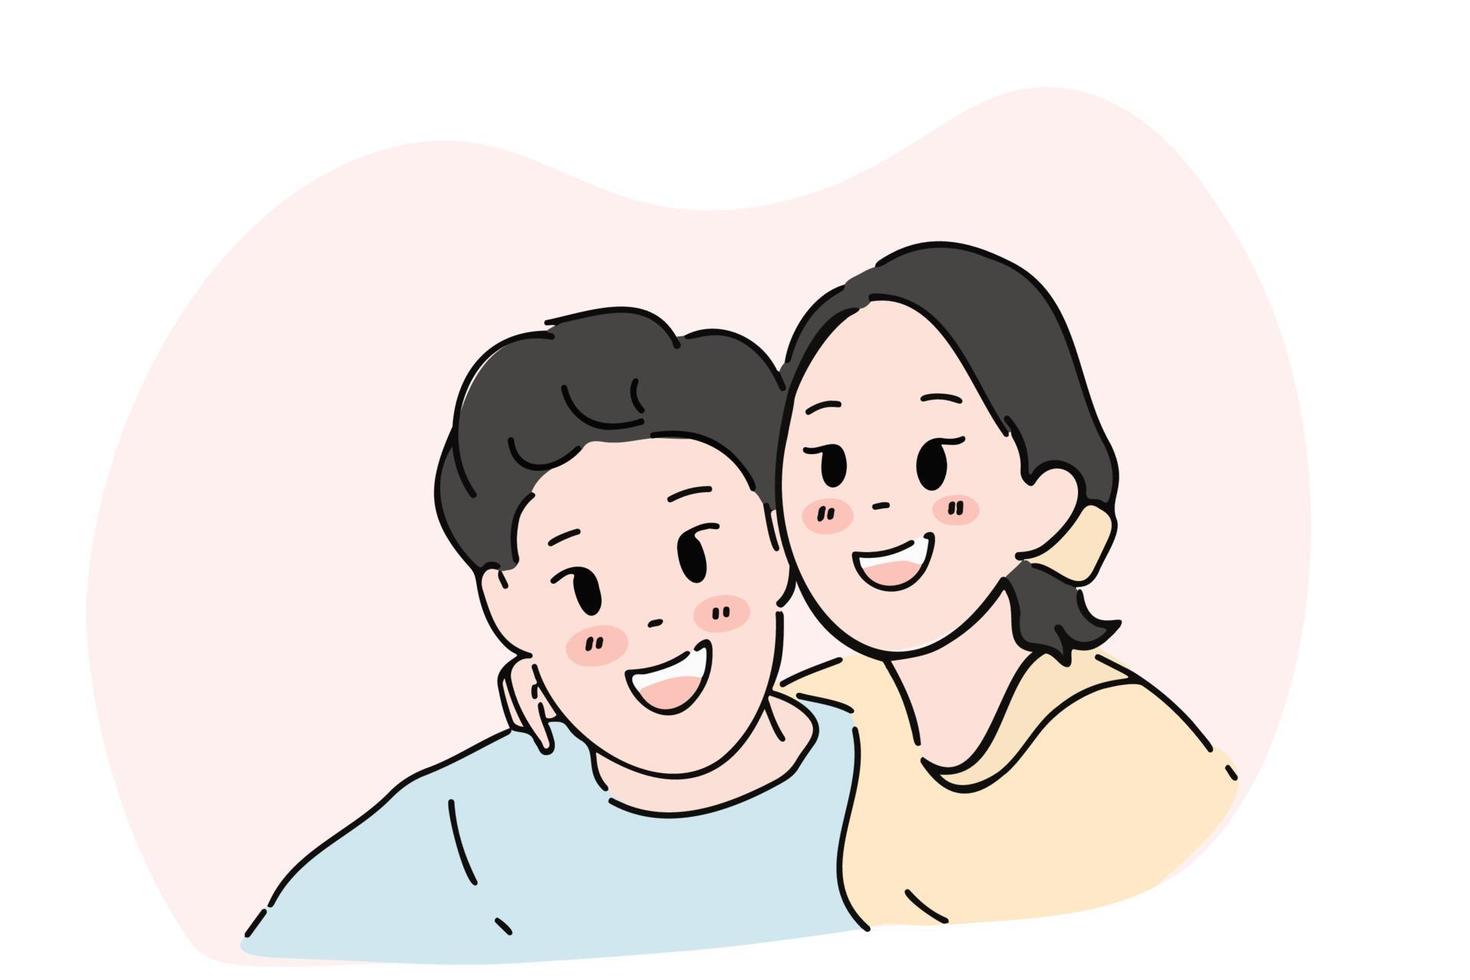 met de hand getekende illustratie van een jonge man en vrouw die lacht en gelukkig omhelst vector